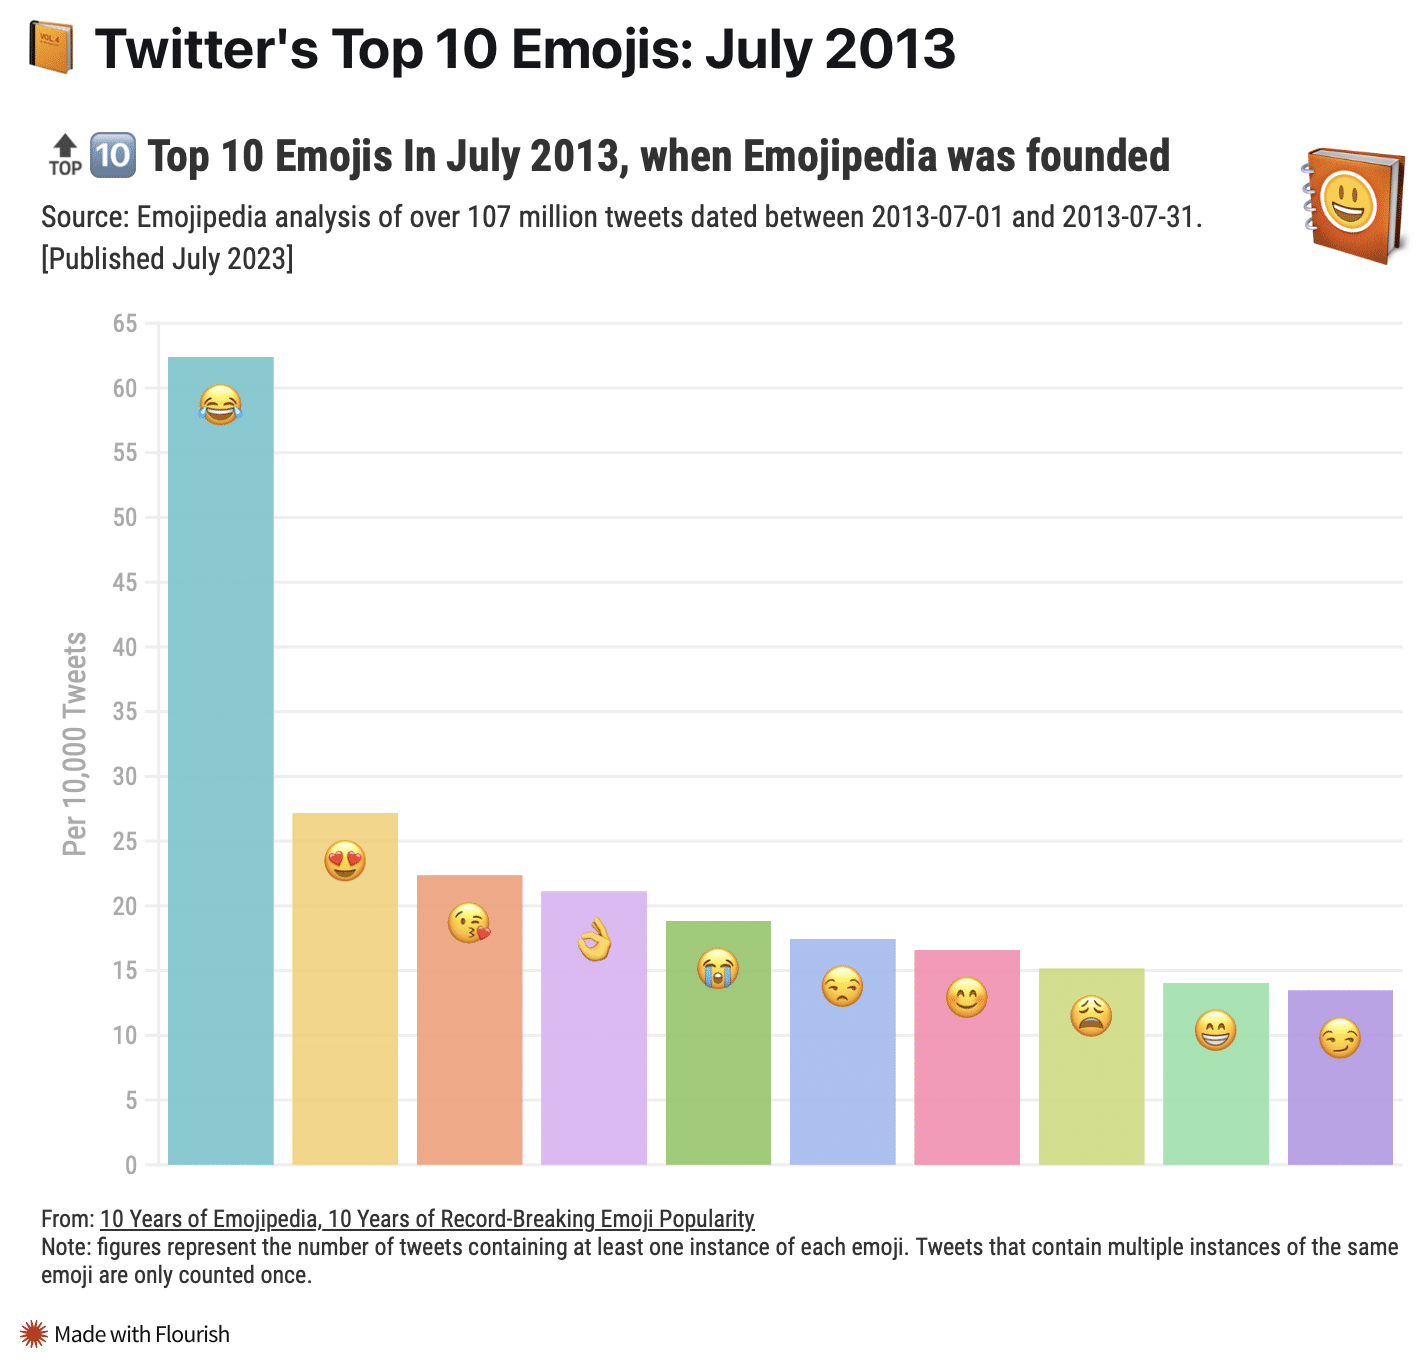 Pesquisa do Emojipedia sobre o uso de emojis no Twitter